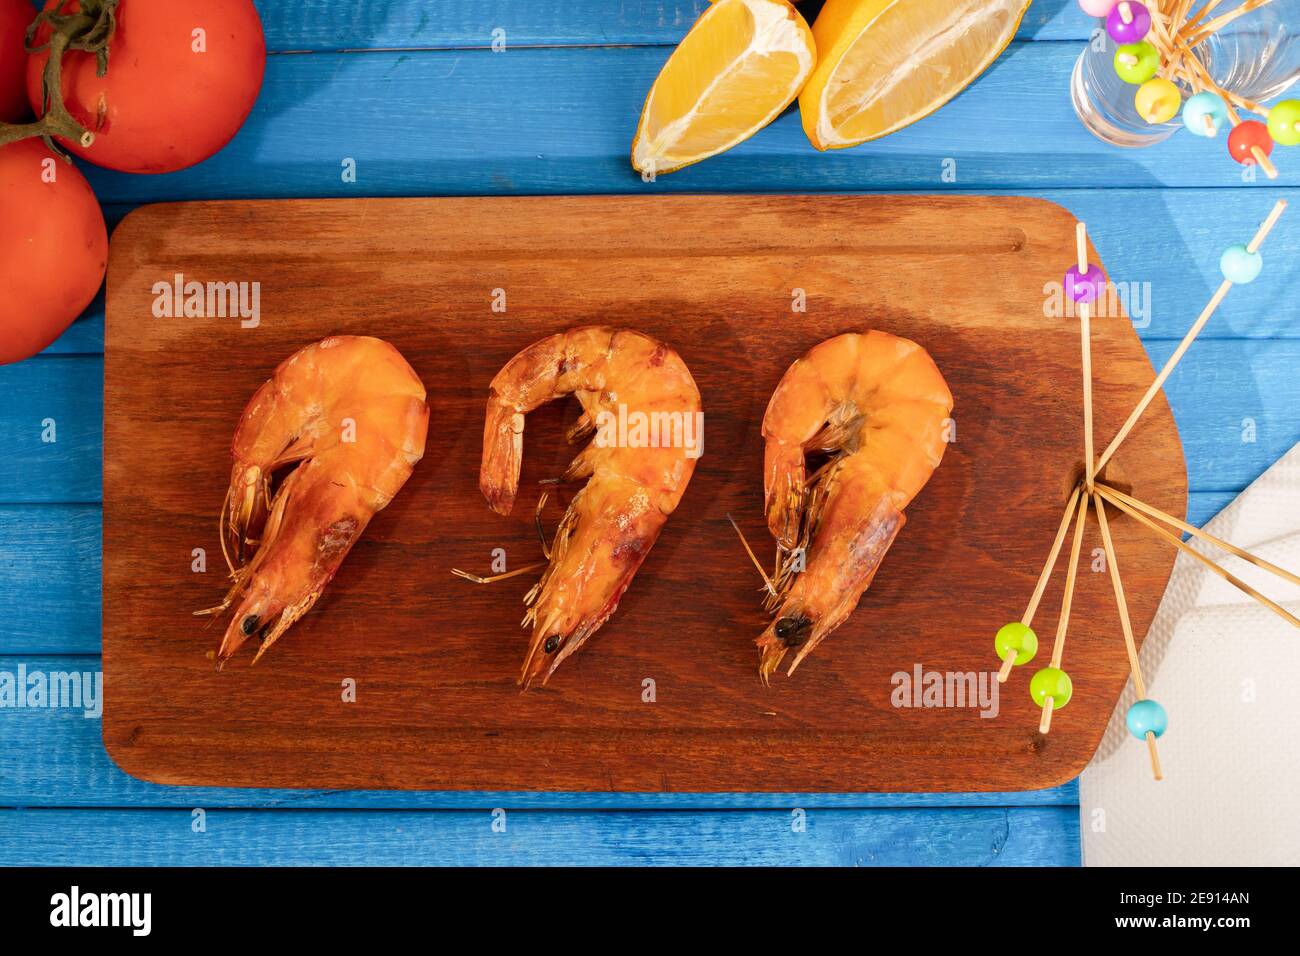 Crevettes rôties entières sur un plateau en bois, sur une table bleue. Nourriture d'été, fraîche et naturelle. Banque D'Images